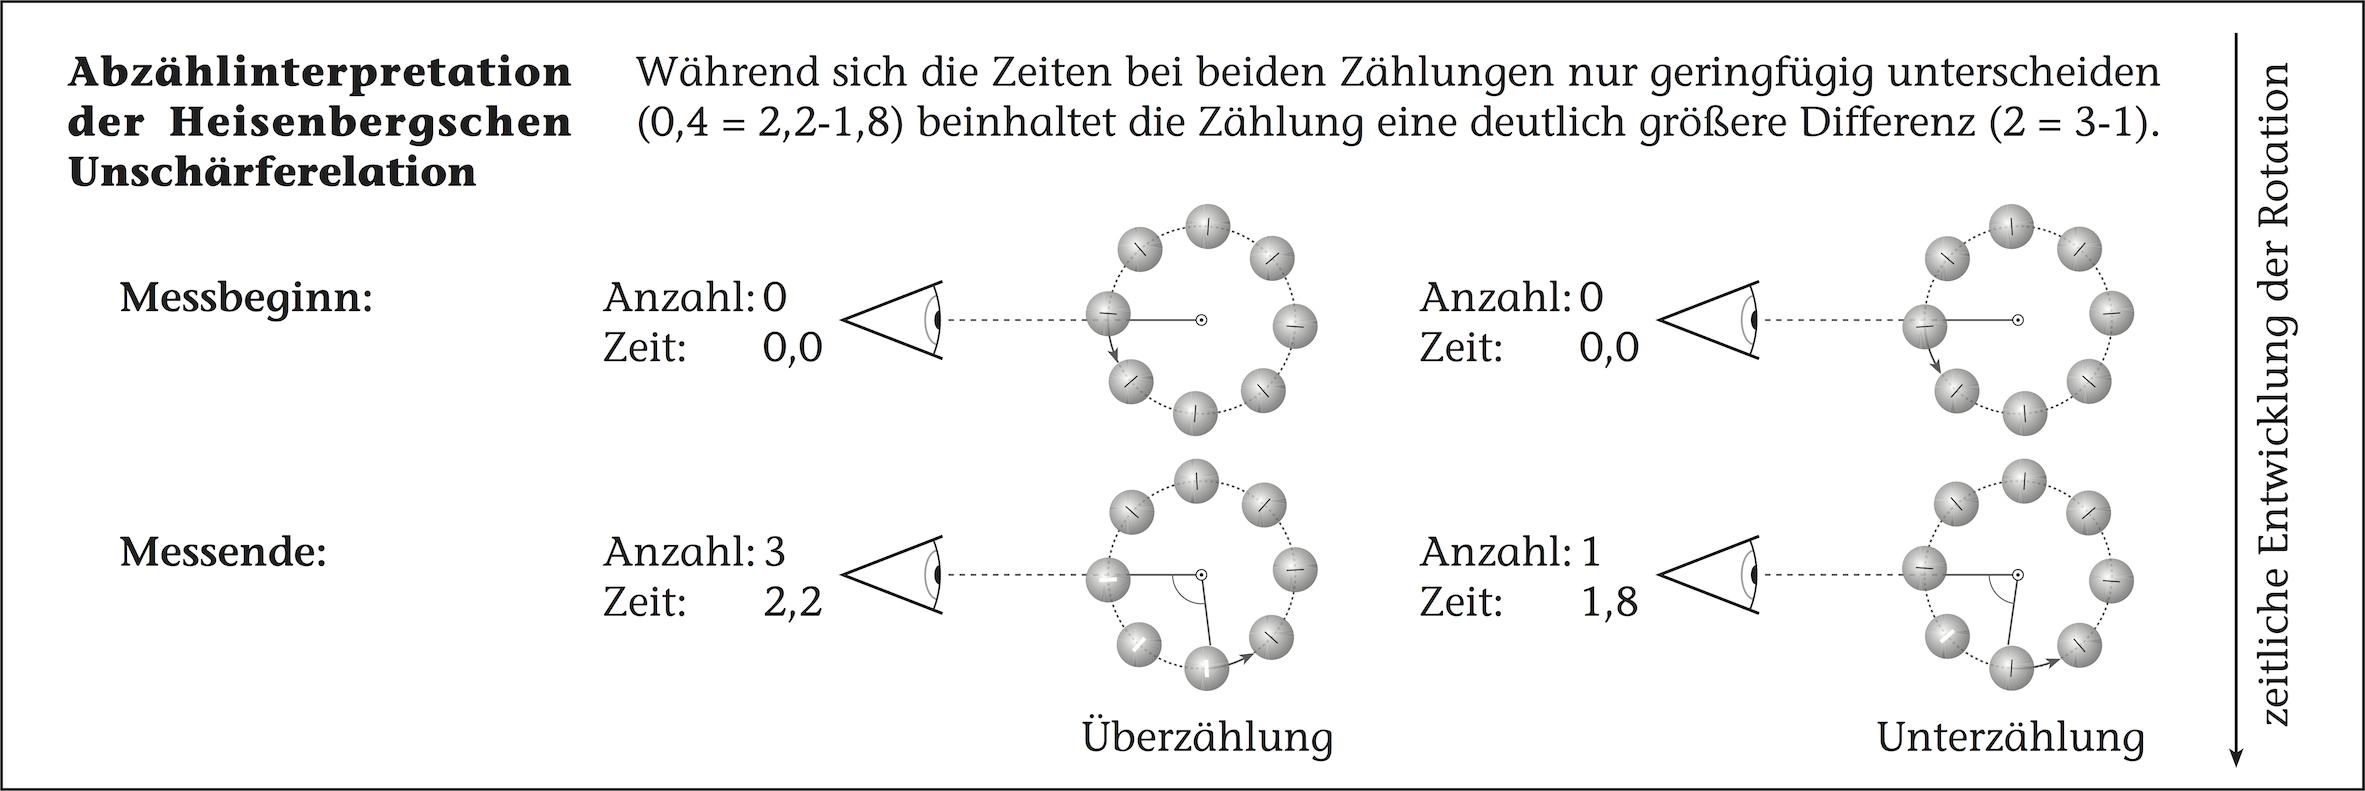 Abzählinterpretation der Heisenbergschen Unschärferelation